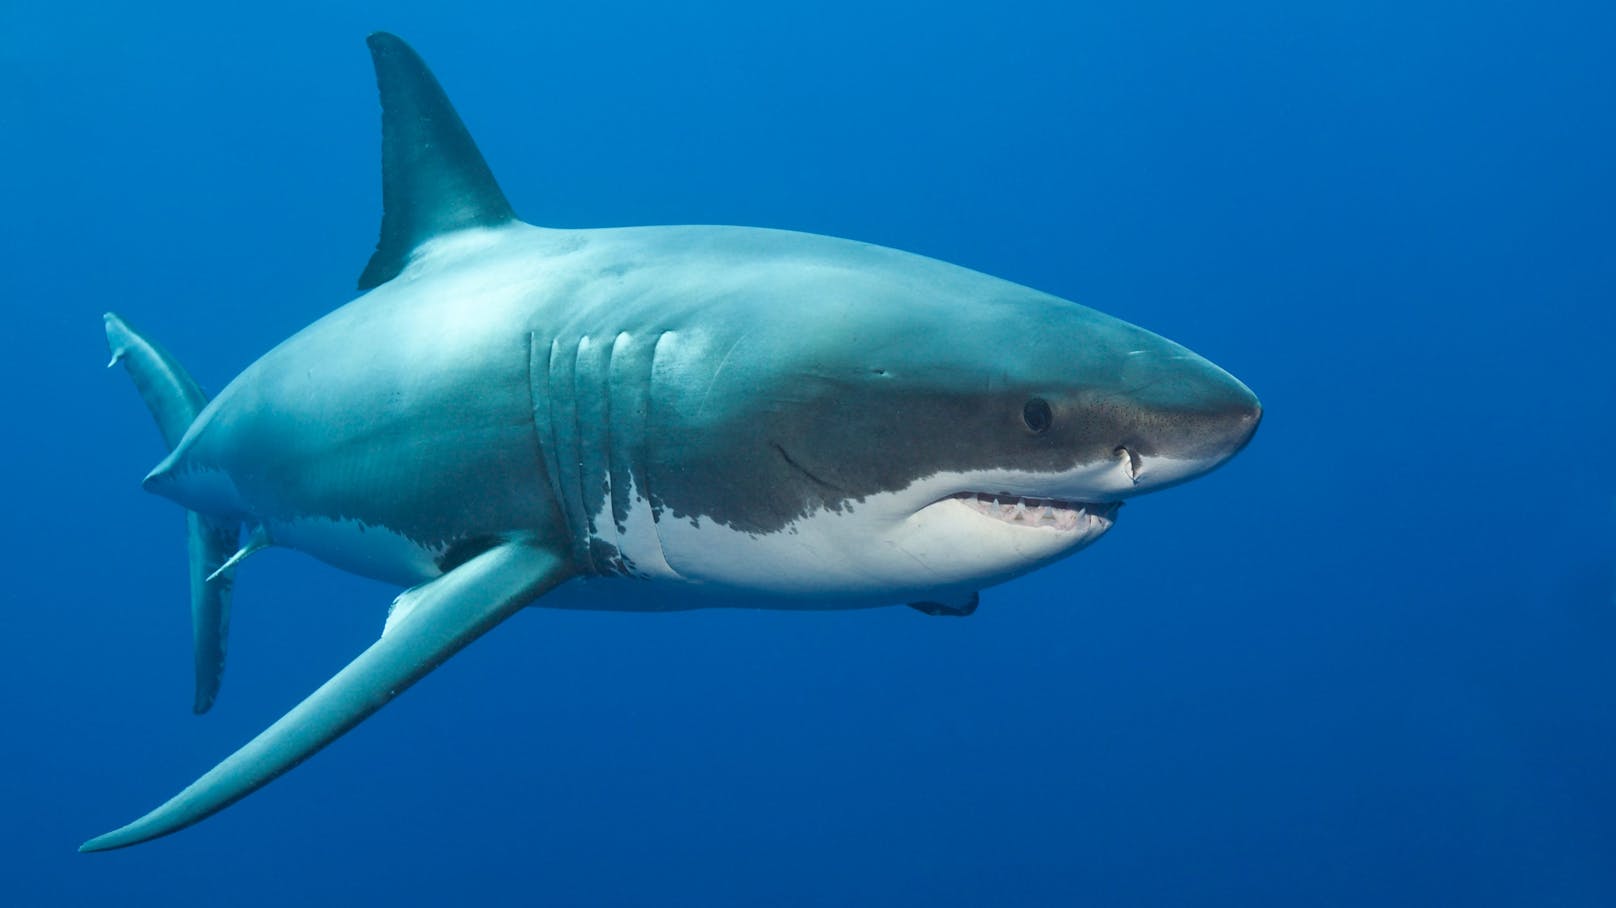 Erneut kam es in Australien zu einer Hai-Attacke (Symbolbild).